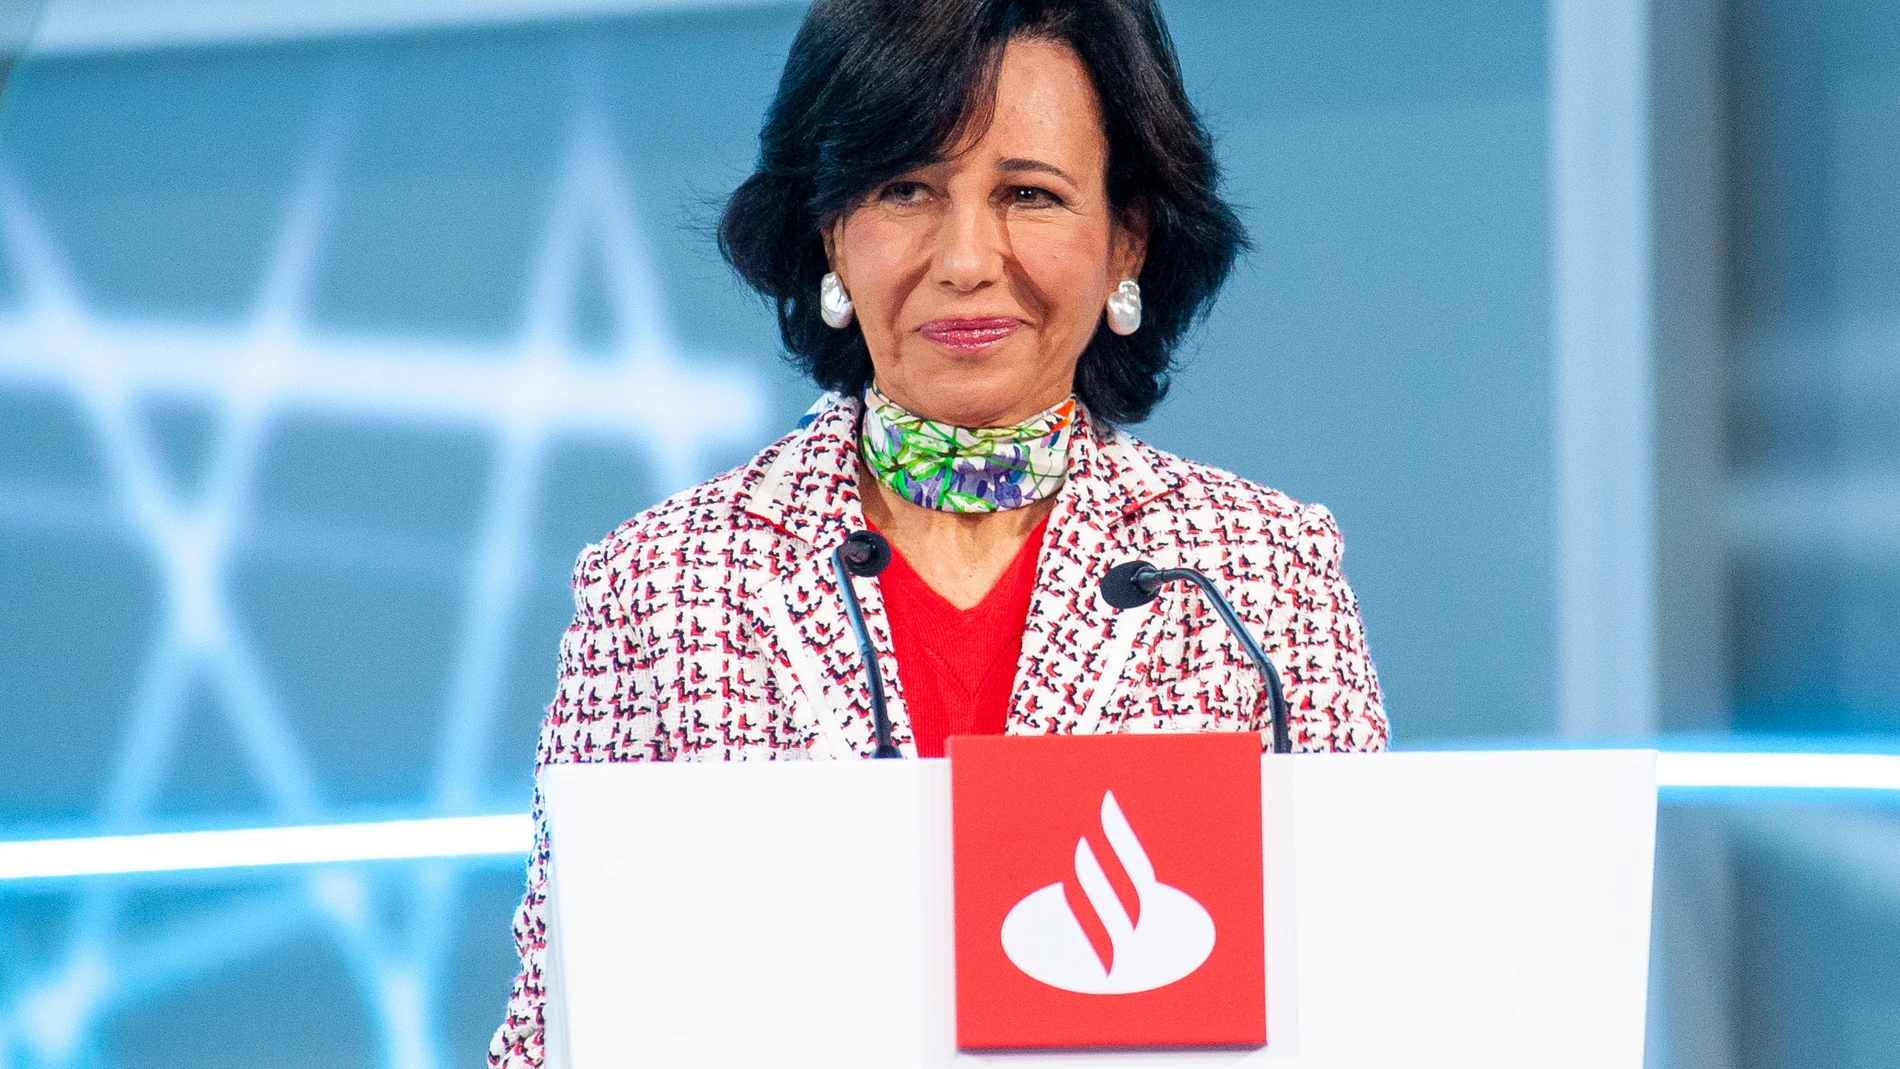 La presidenta del Banco Santander, Ana Botín, ofrece su discurso en la Junta General ordinaria de Accionistas